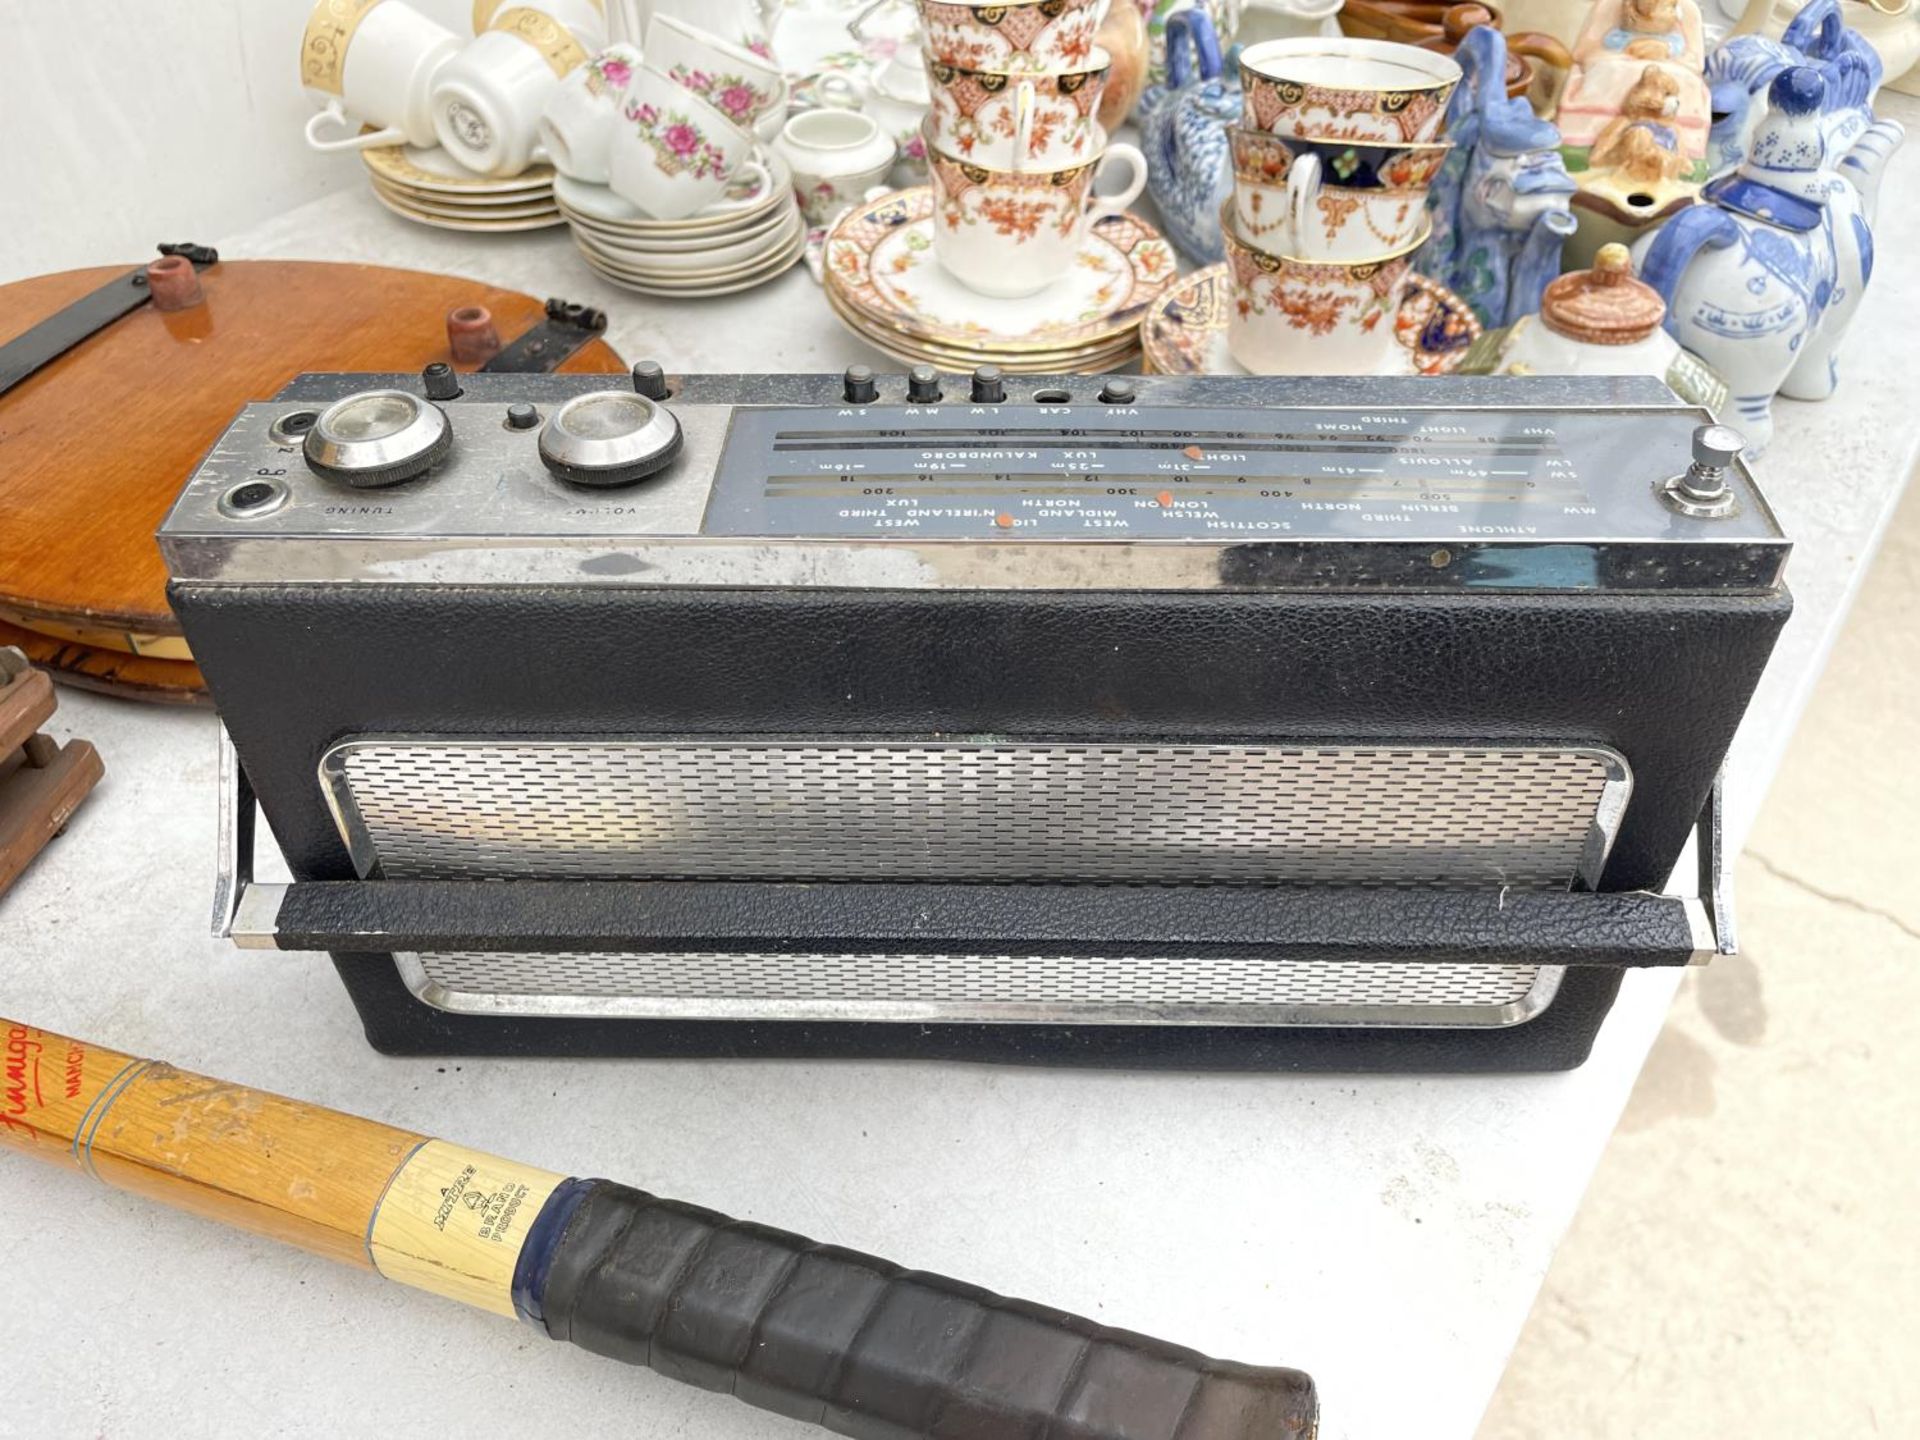 A RETRO/VINTAGE HMV RADIO - Image 3 of 3